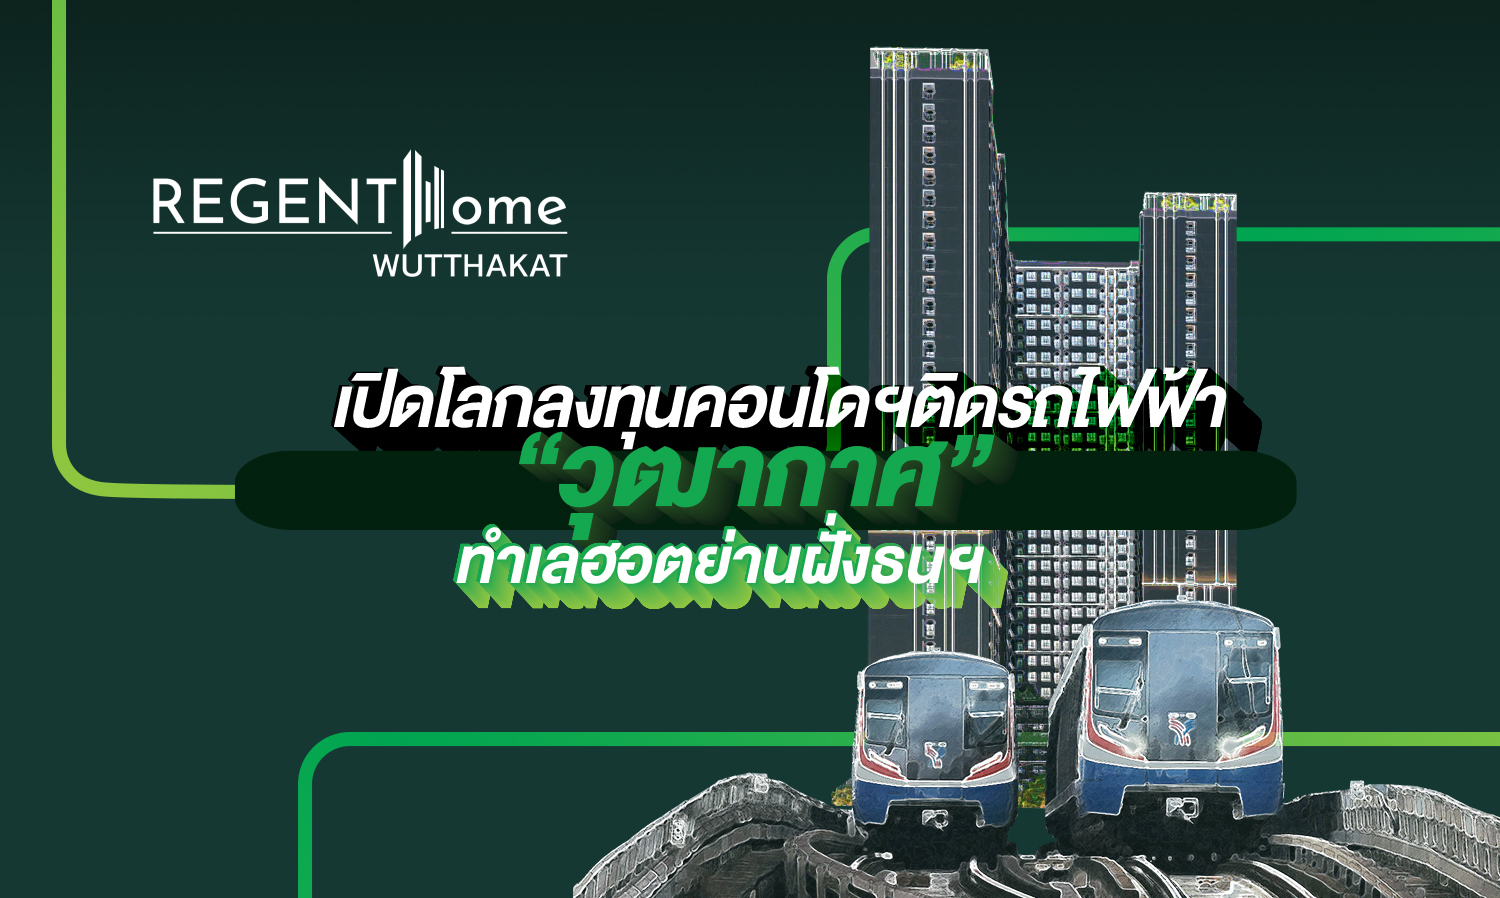 Regent Home Wutthakat  เปิดโลกลงทุนคอนโดฯ ติดรถไฟฟ้า ทำเลฮอตย่านฝั่งธนฯ ฉบับสบายกระเป๋า